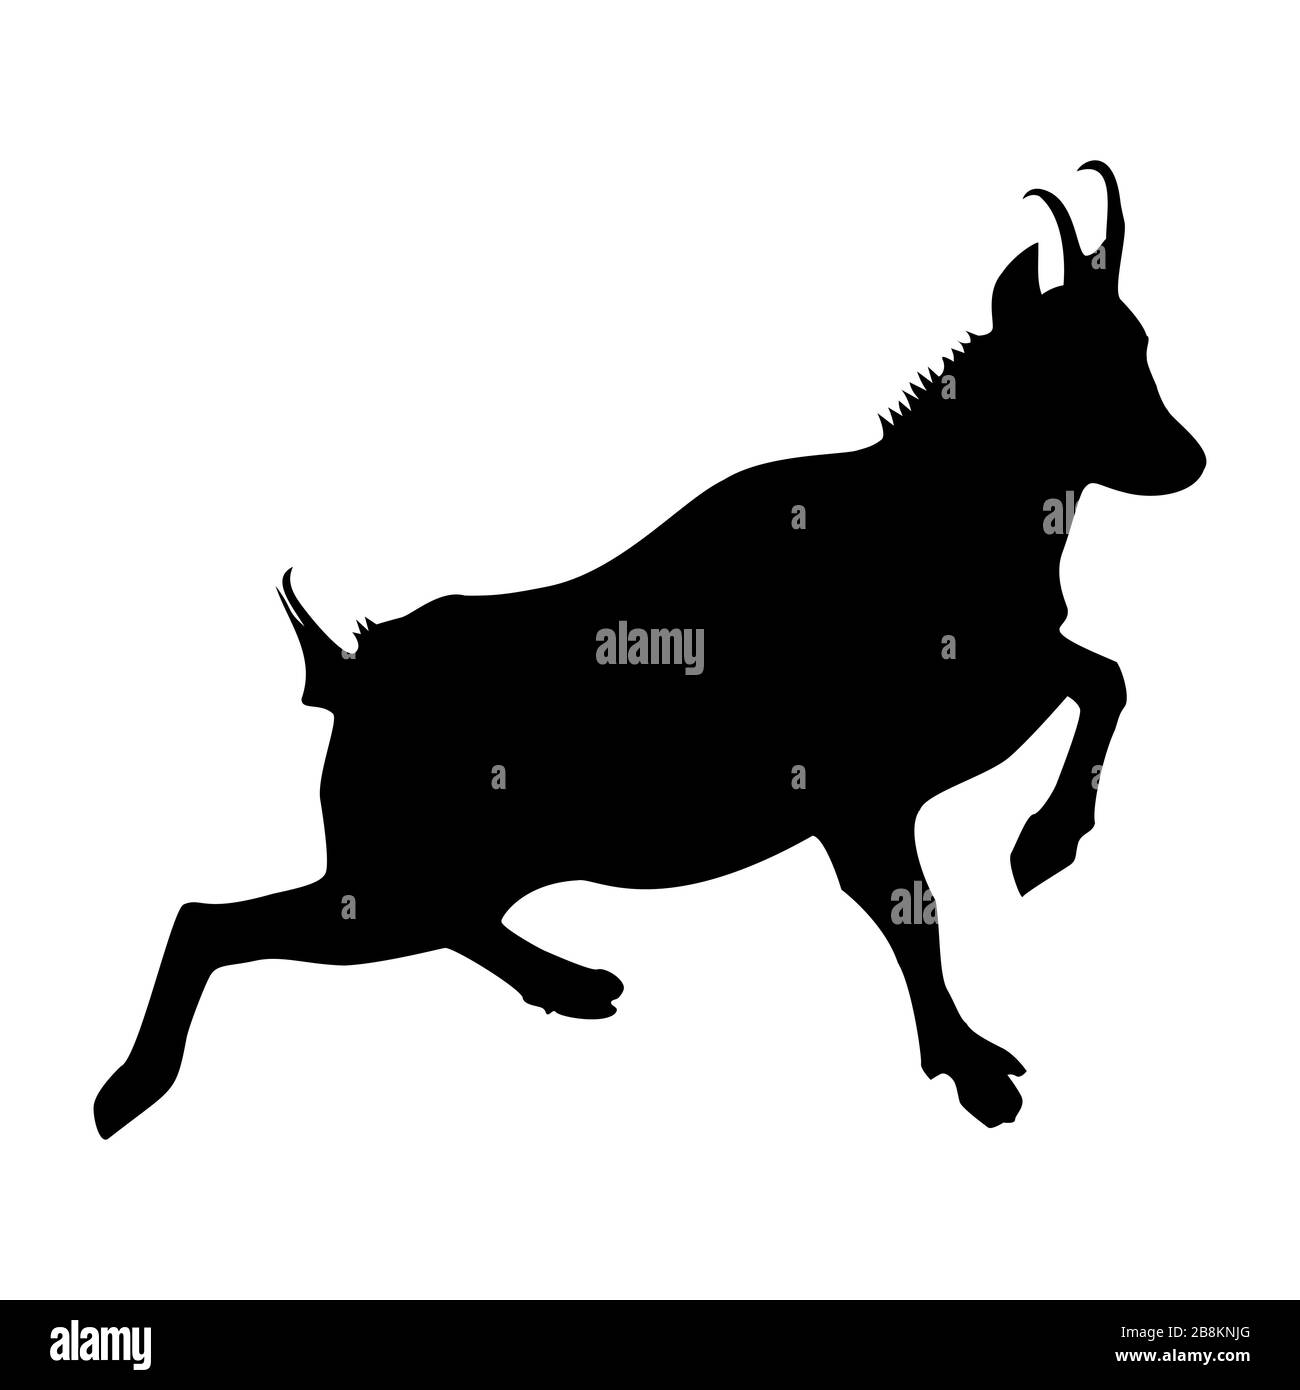 Chèvre de montagne (Rupicapra Rupicapra) Silhouette en noir - profil latéral. Dessin d'un vrai chamois courir dans les montagnes. Illustration de Vecteur